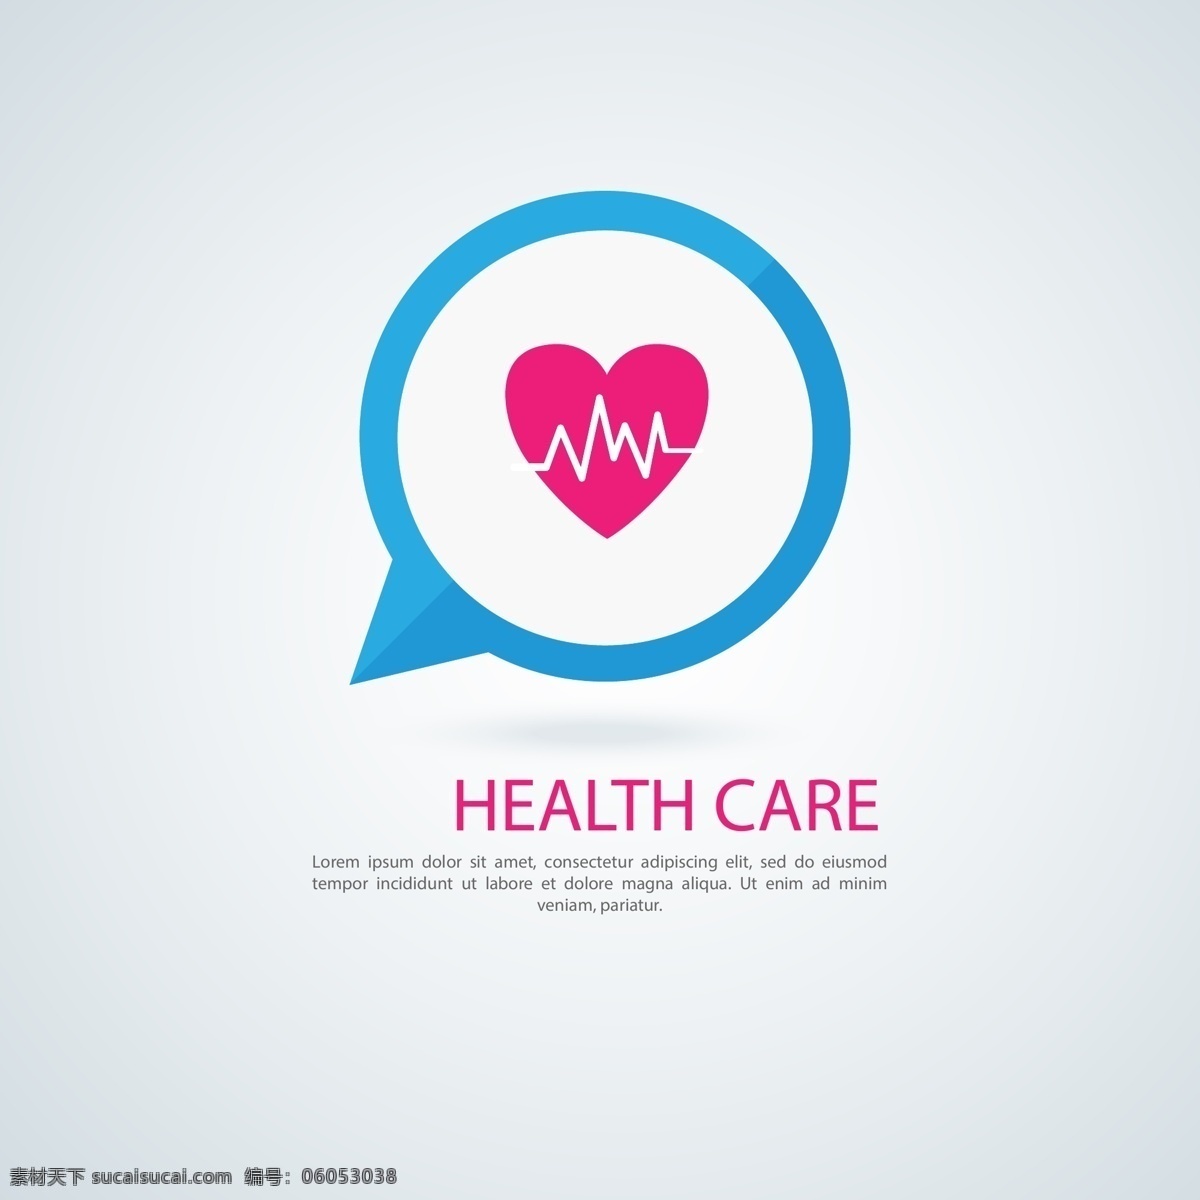 卫生保健 图标 logo 模板 保健 健康 体检 logo模板